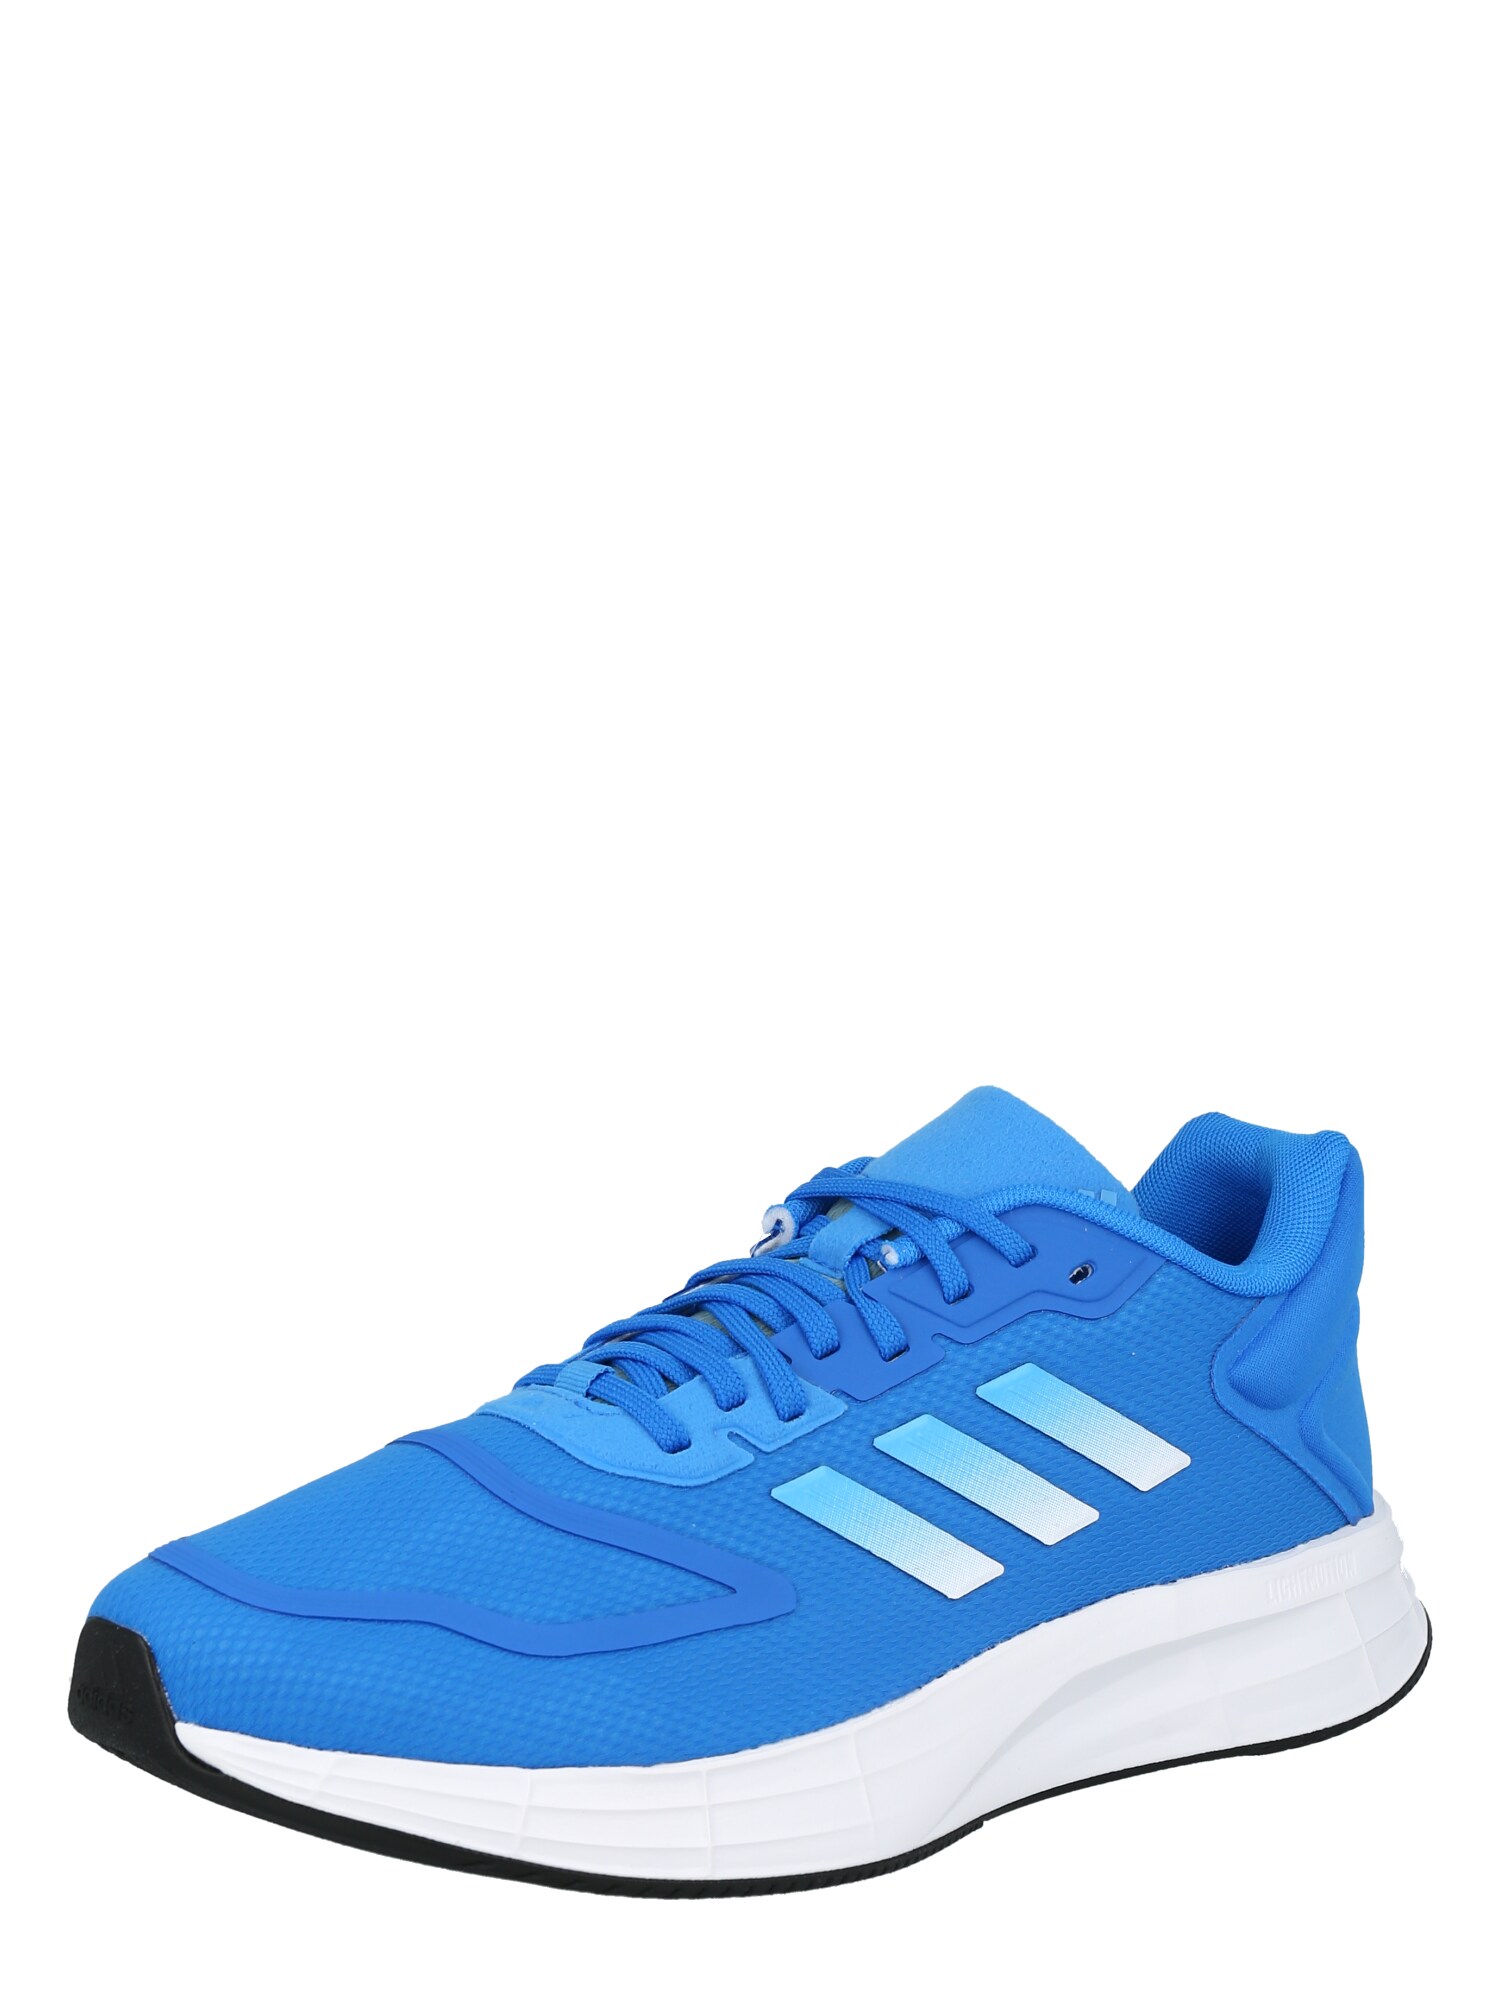 ADIDAS PERFORMANCE Bėgimo batai 'DURAMO 10' mėlyna / turkio spalva